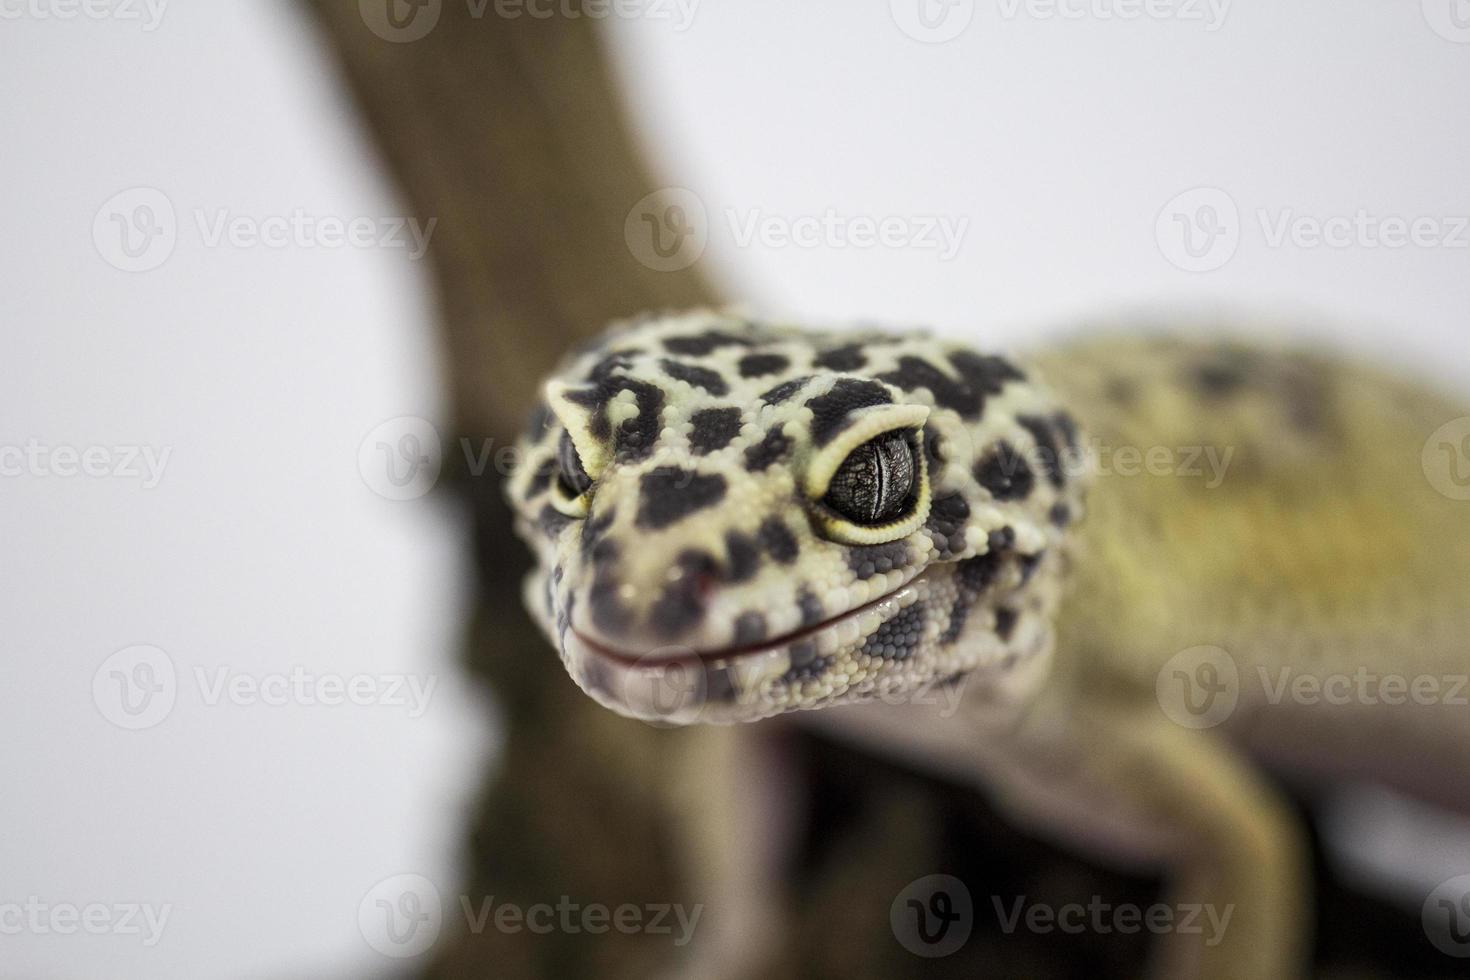 Leopardgecko foto